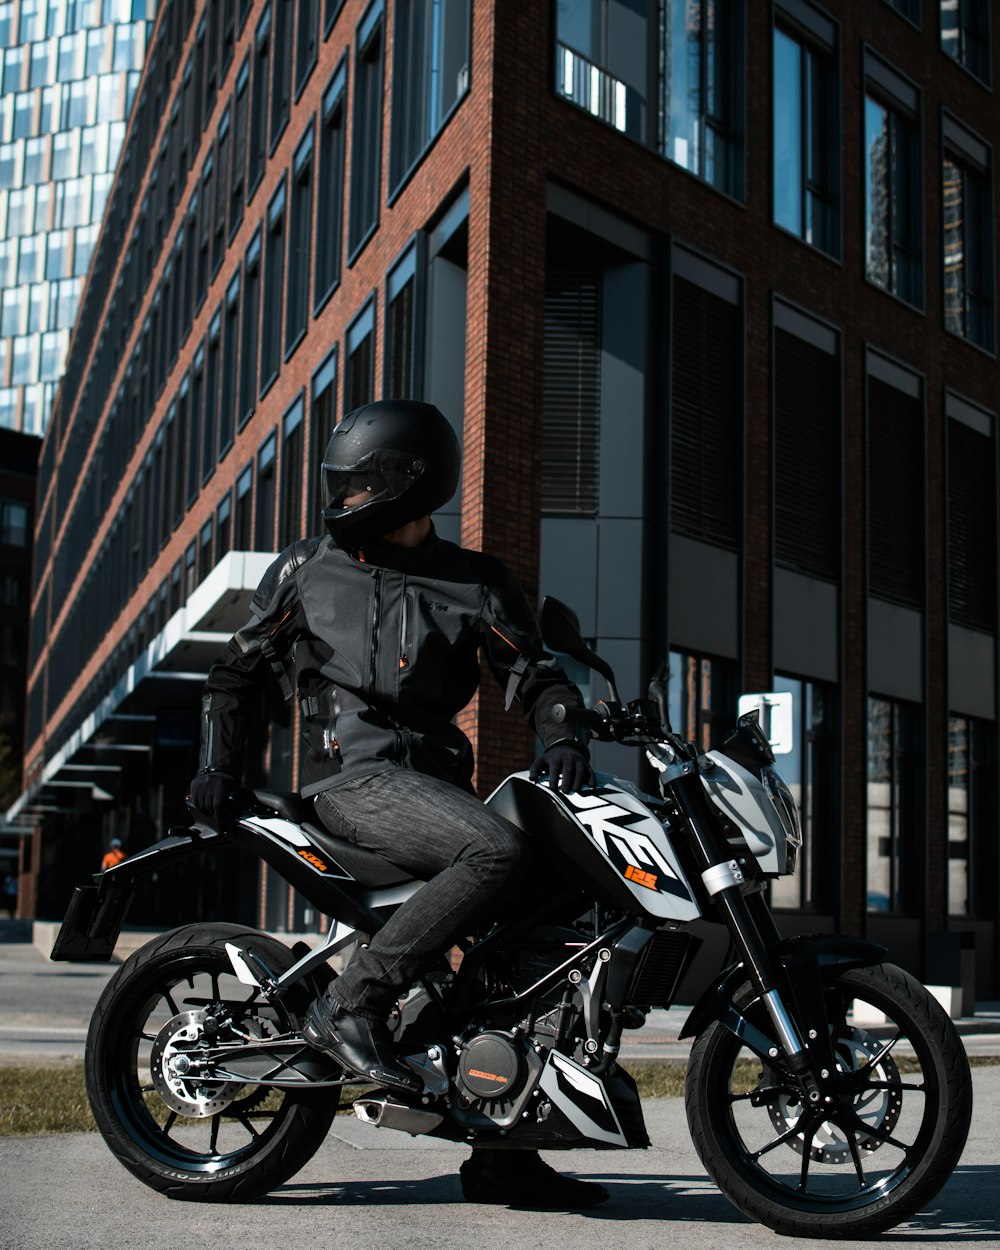 Personne conduisant une moto nue en noir et blanc photo – Photo Moto  Gratuite sur Unsplash